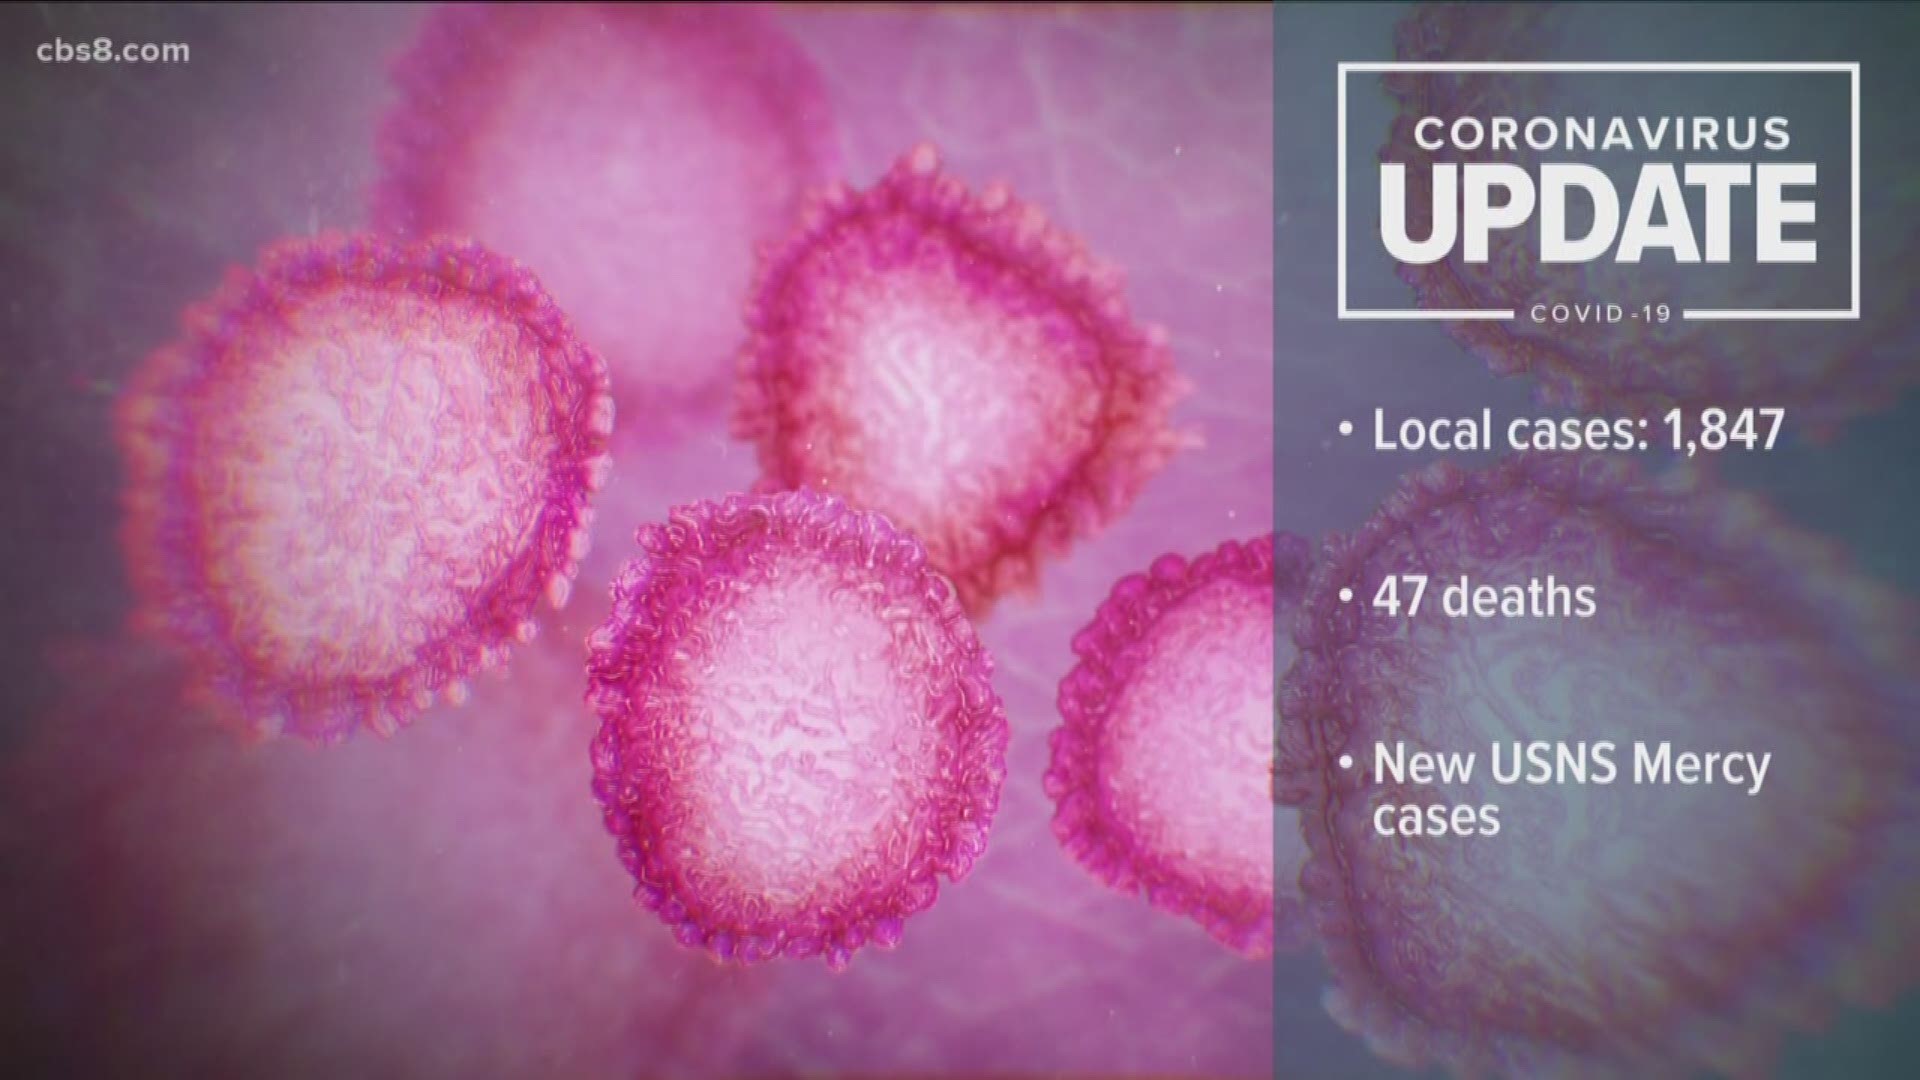 Coronavirus in San Diego and California latest updates and news: https://www.cbs8.com/coronavirus-covid-19